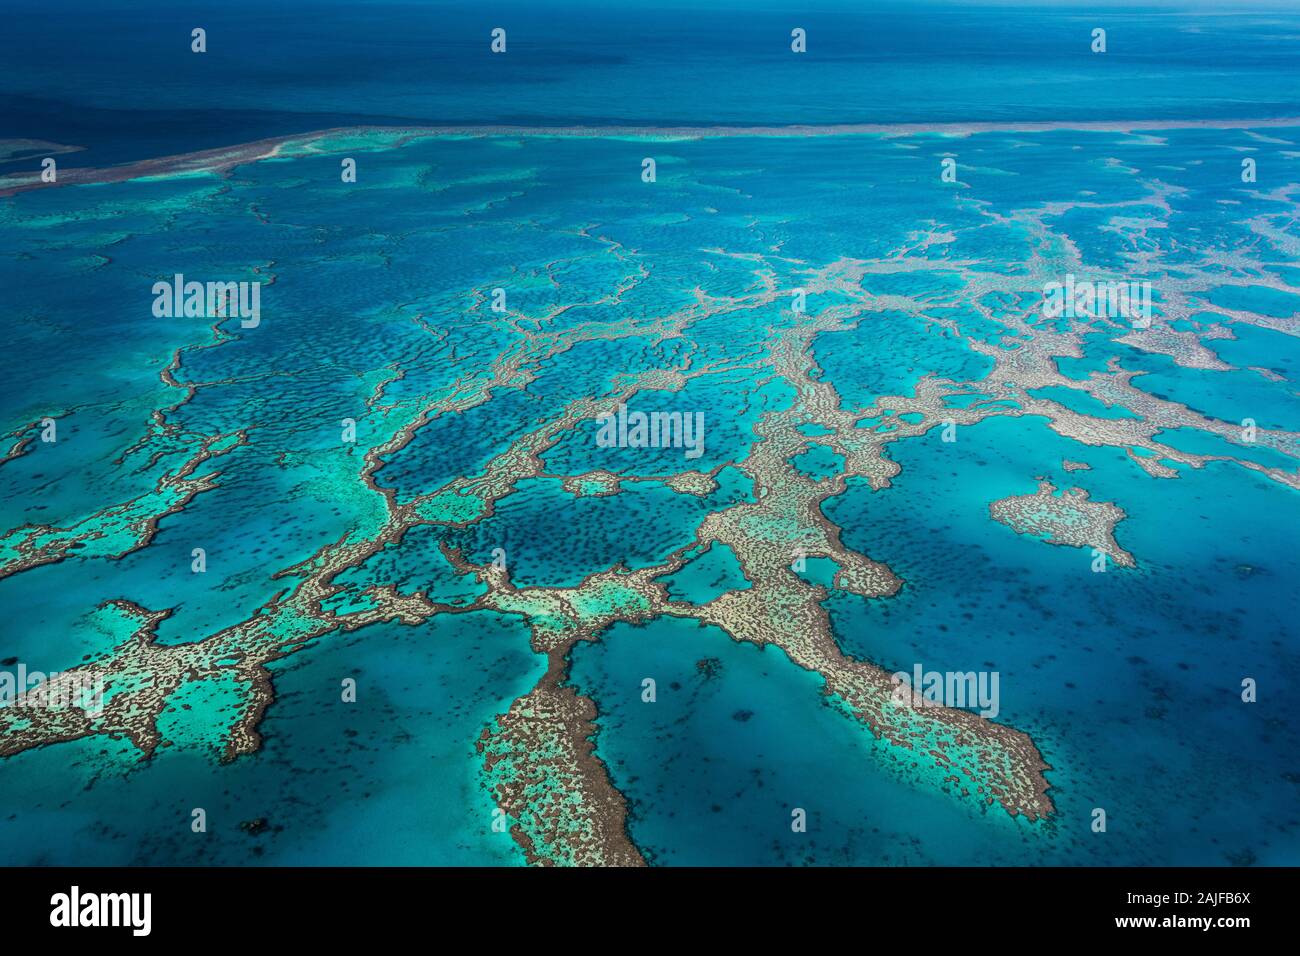 La famosa Grande barriera Corallina è chiamata una meraviglia naturale del mondo ed è altamente minacciata. Foto Stock